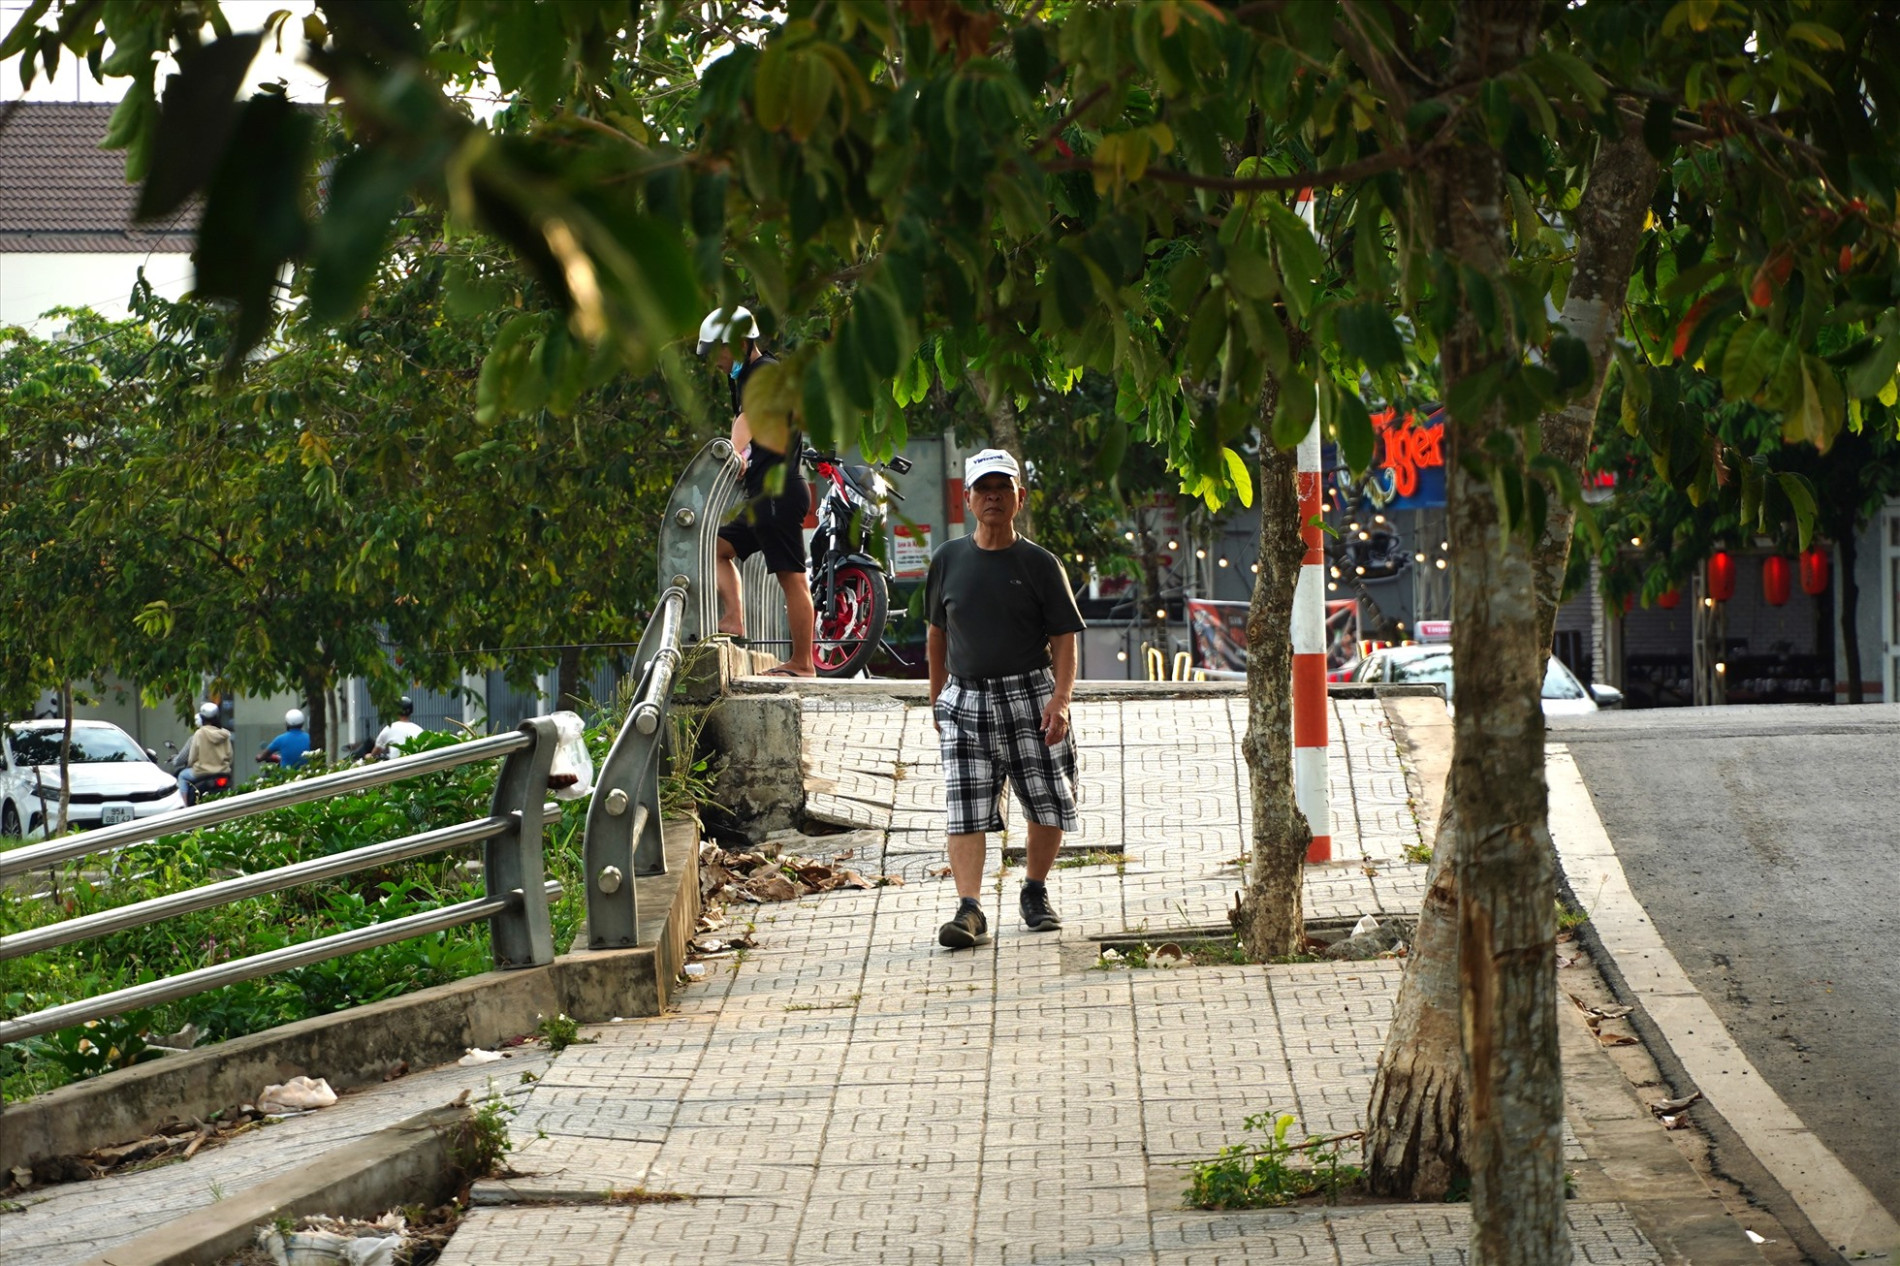 Thường xuyên đi bộ thể dục trên đoạn bờ kè này, ông Trịnh Văn Kiểm (72 tuổi, P. An Khánh, Q. Ninh Kiều) cho biết, vào mỗi buổi sáng hoặc chiều, tình trạng sụt lún bờ kè kết hợp với nước lên khiến cho rác thải dạt vào bờ, tồn đọng đầy ứ rất ô nhiễm.